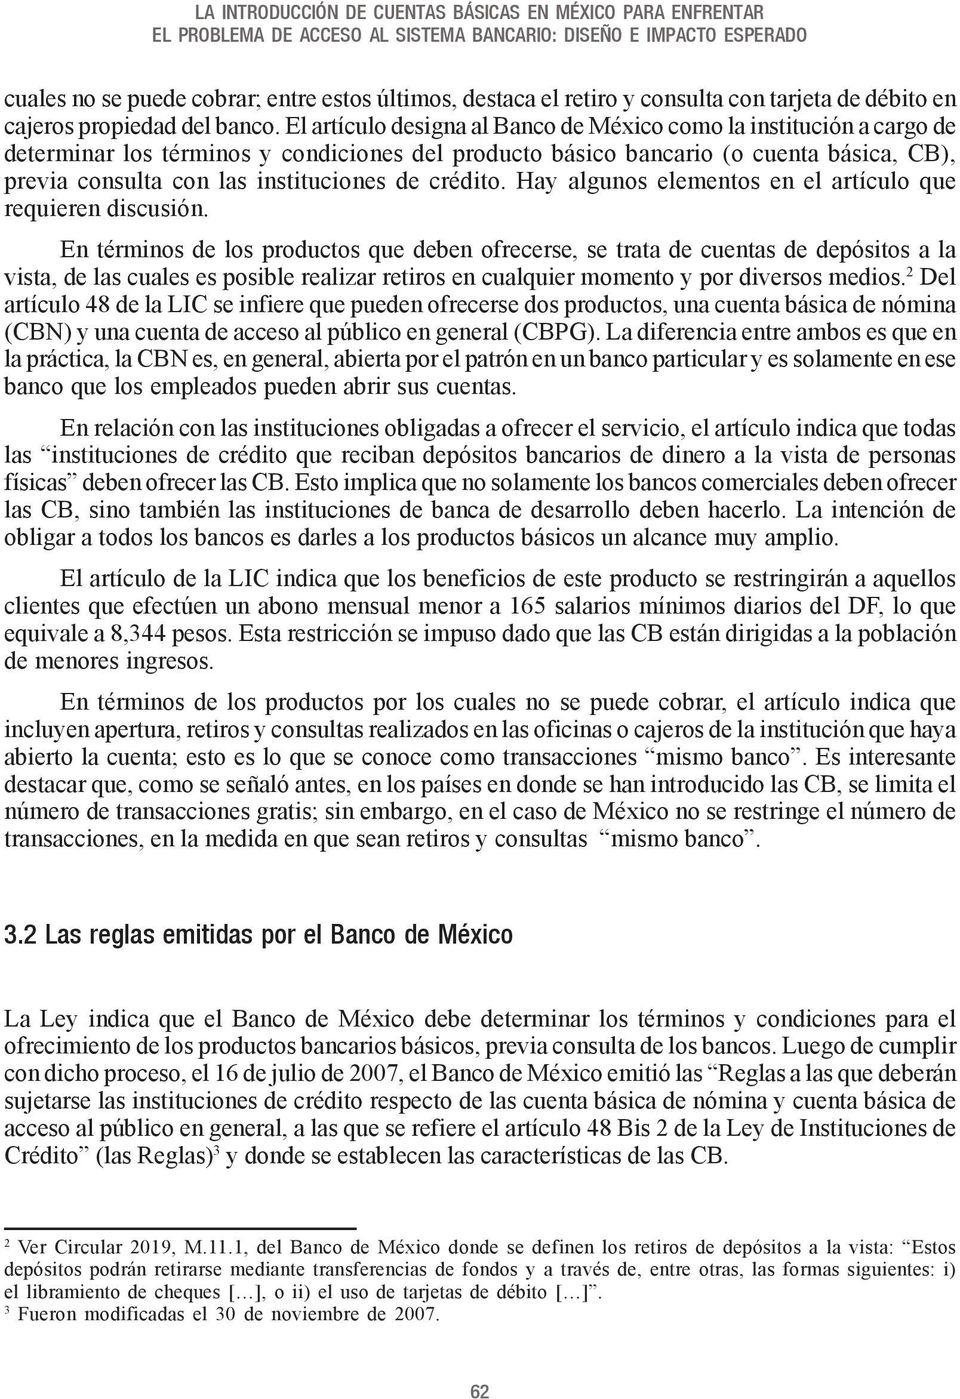 El artículo designa al Banco de México como la institución a cargo de determinar los términos y condiciones del producto básico bancario (o cuenta básica, CB), previa consulta con las instituciones